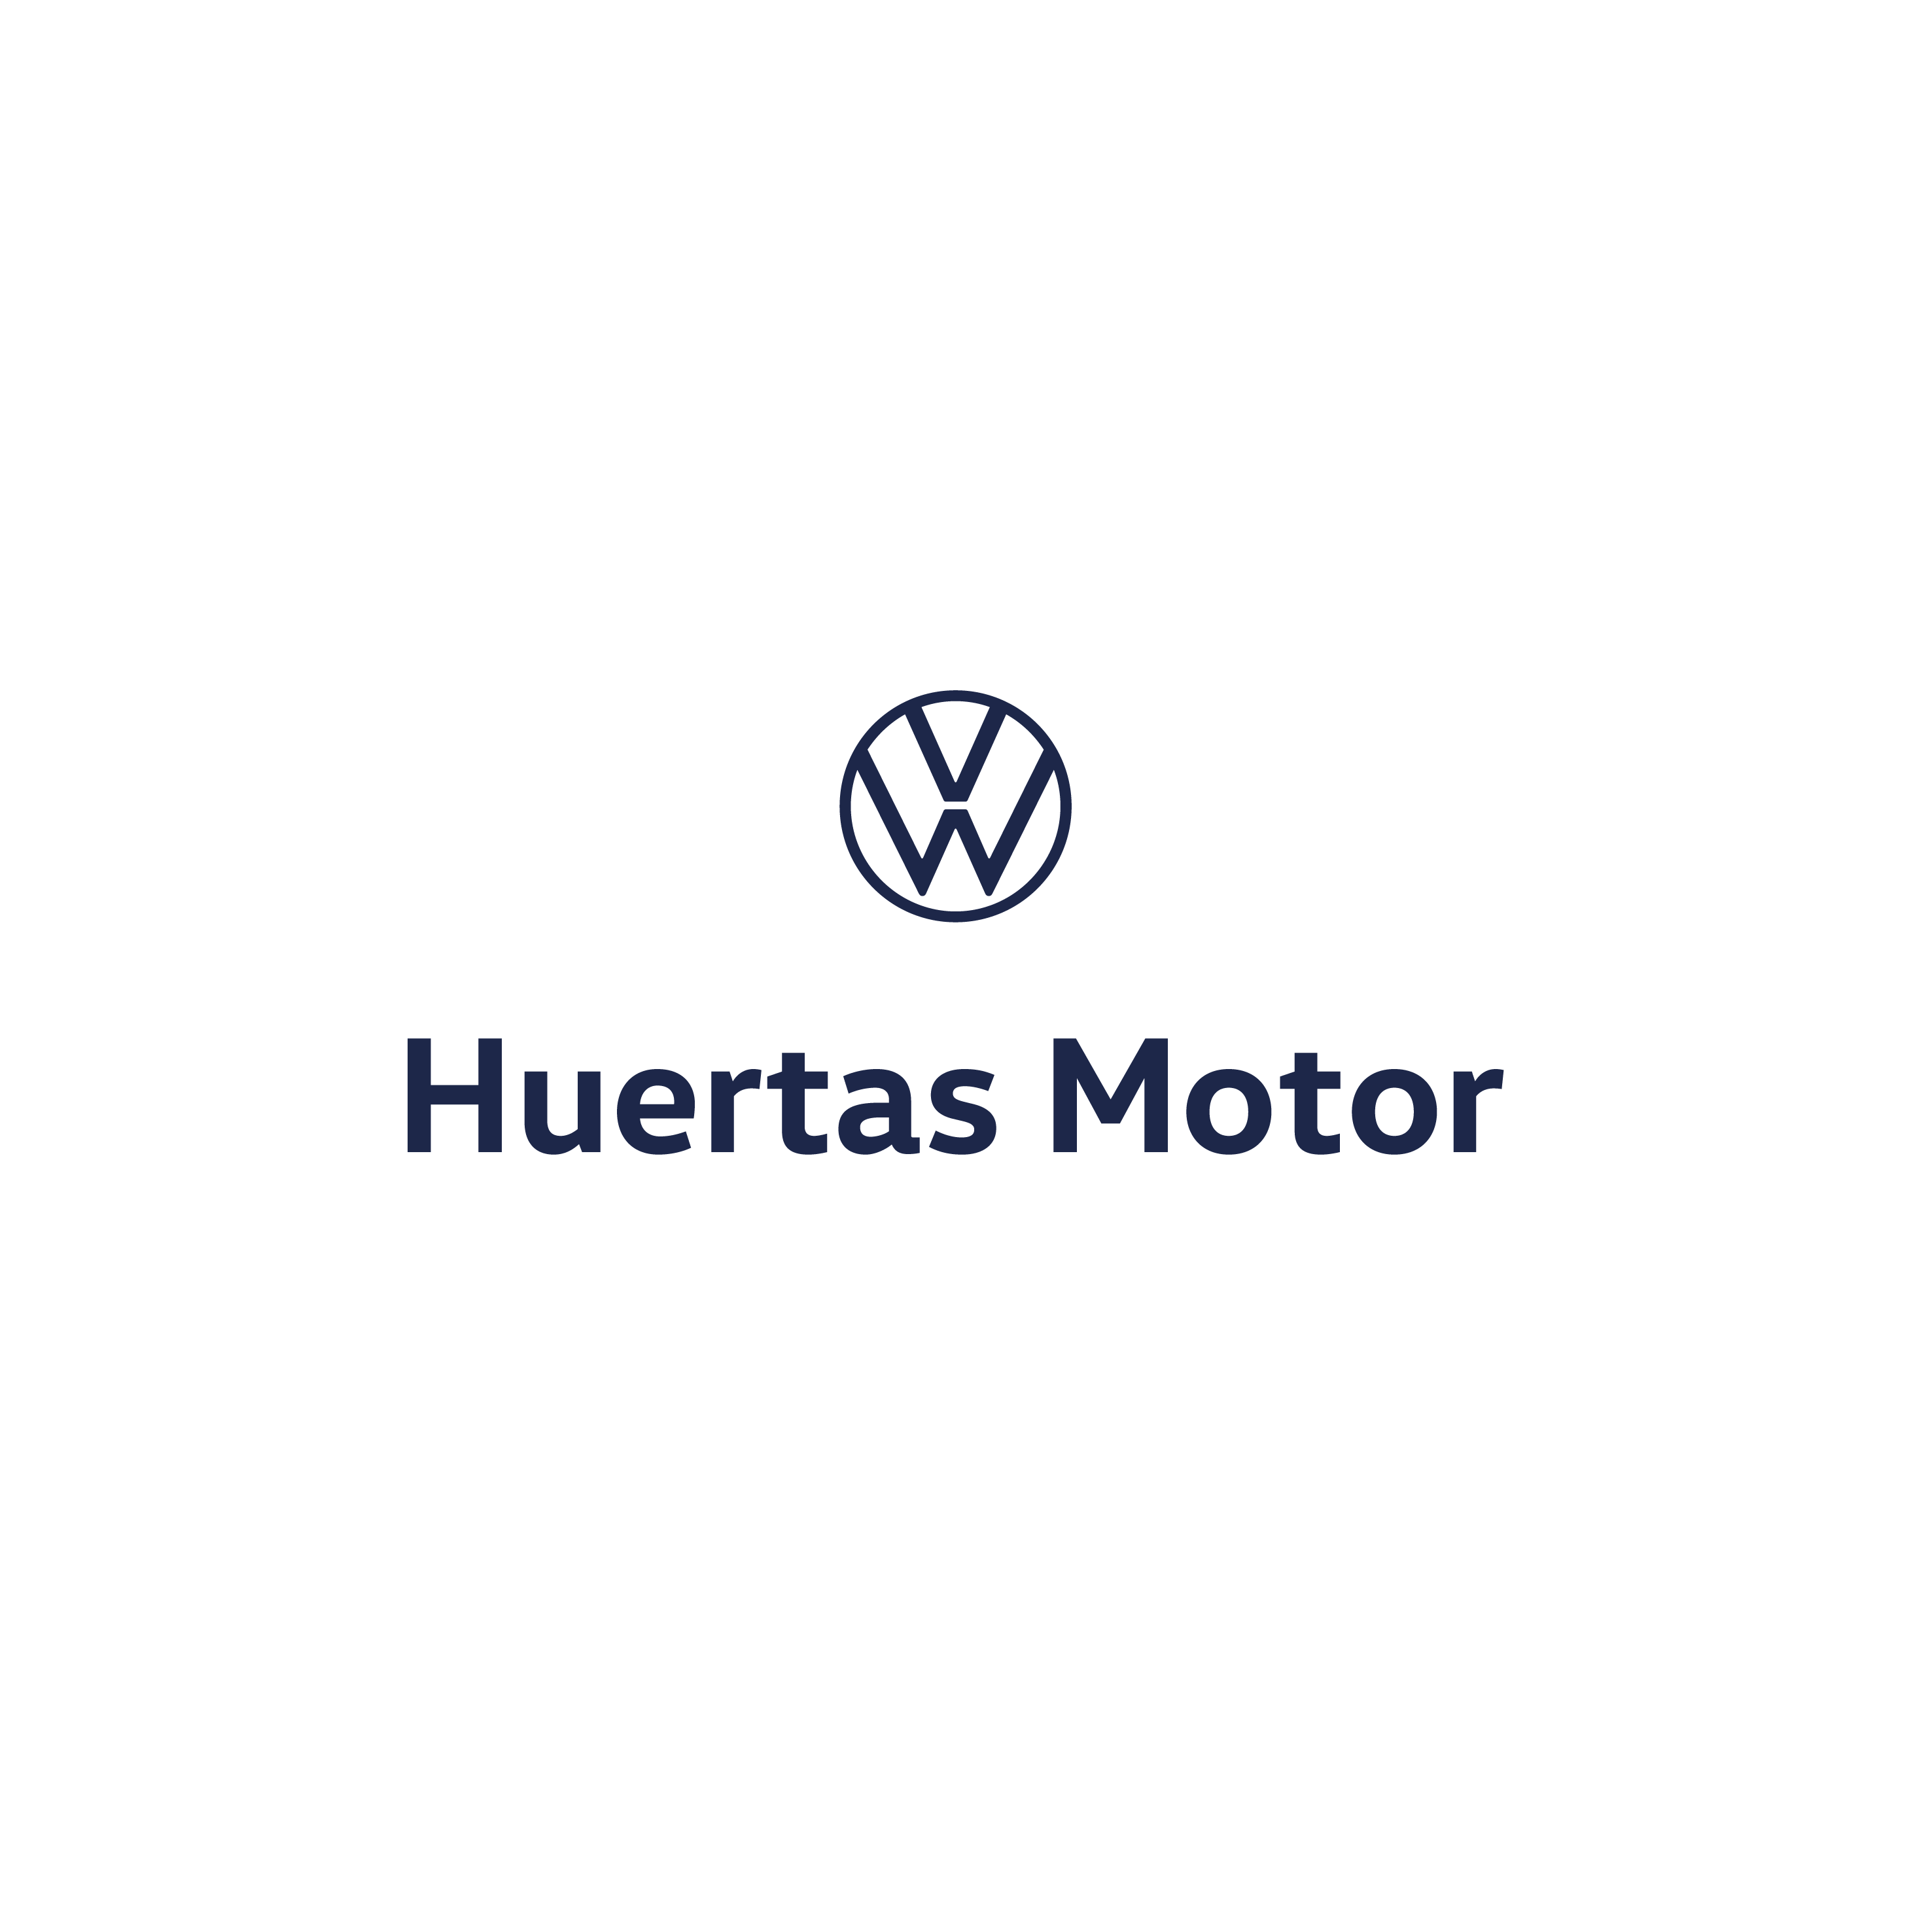 Volkswagen Huertas Motor - Caravaca Caravaca de la Cruz